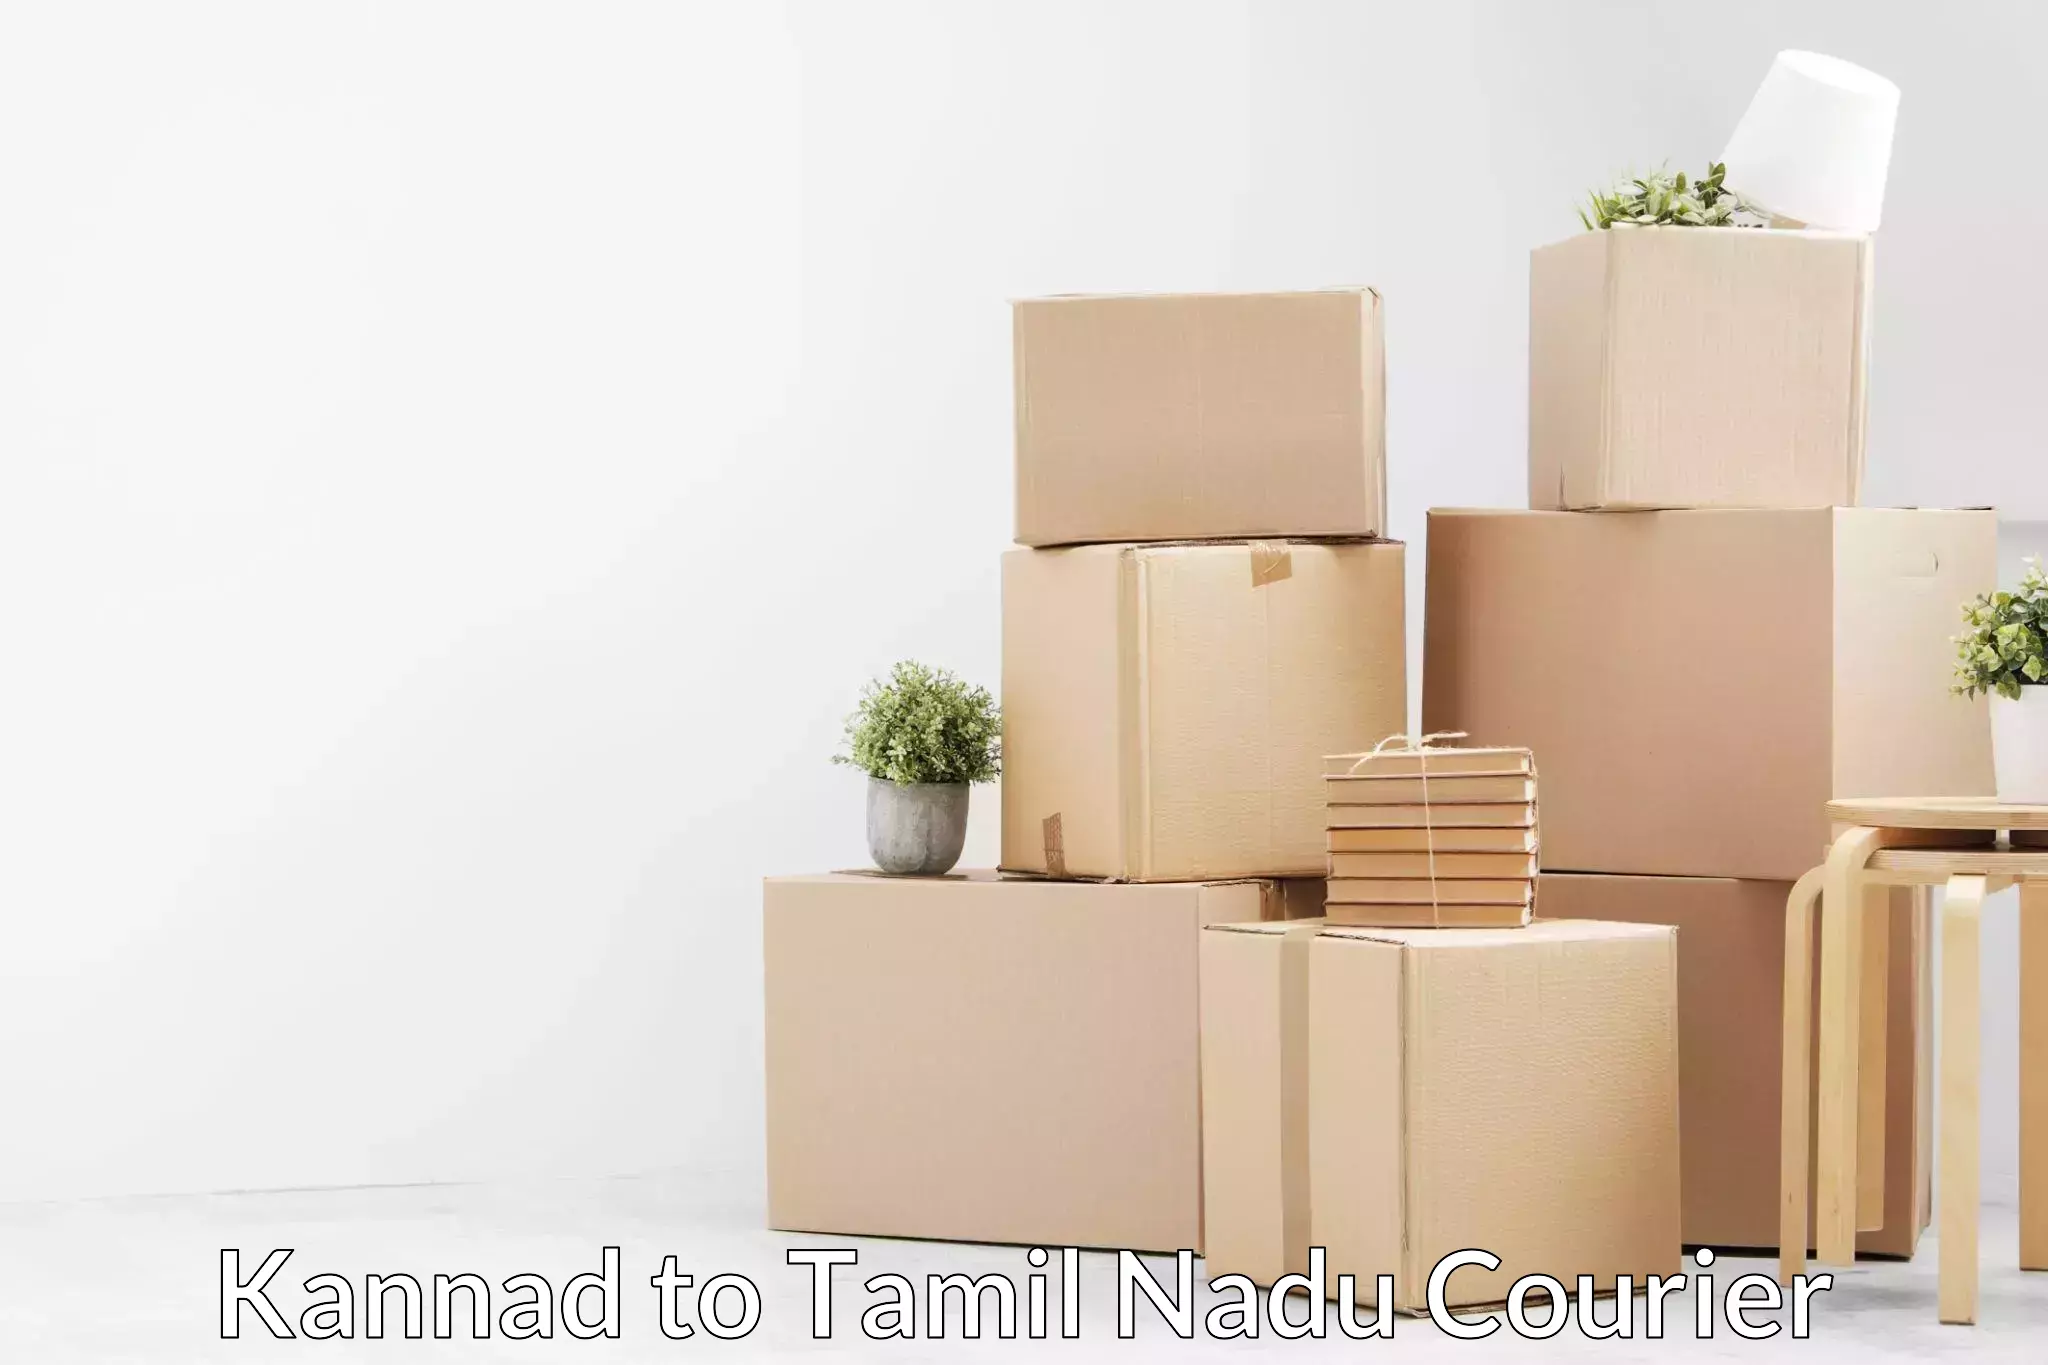 Furniture transport service Kannad to Neyveli